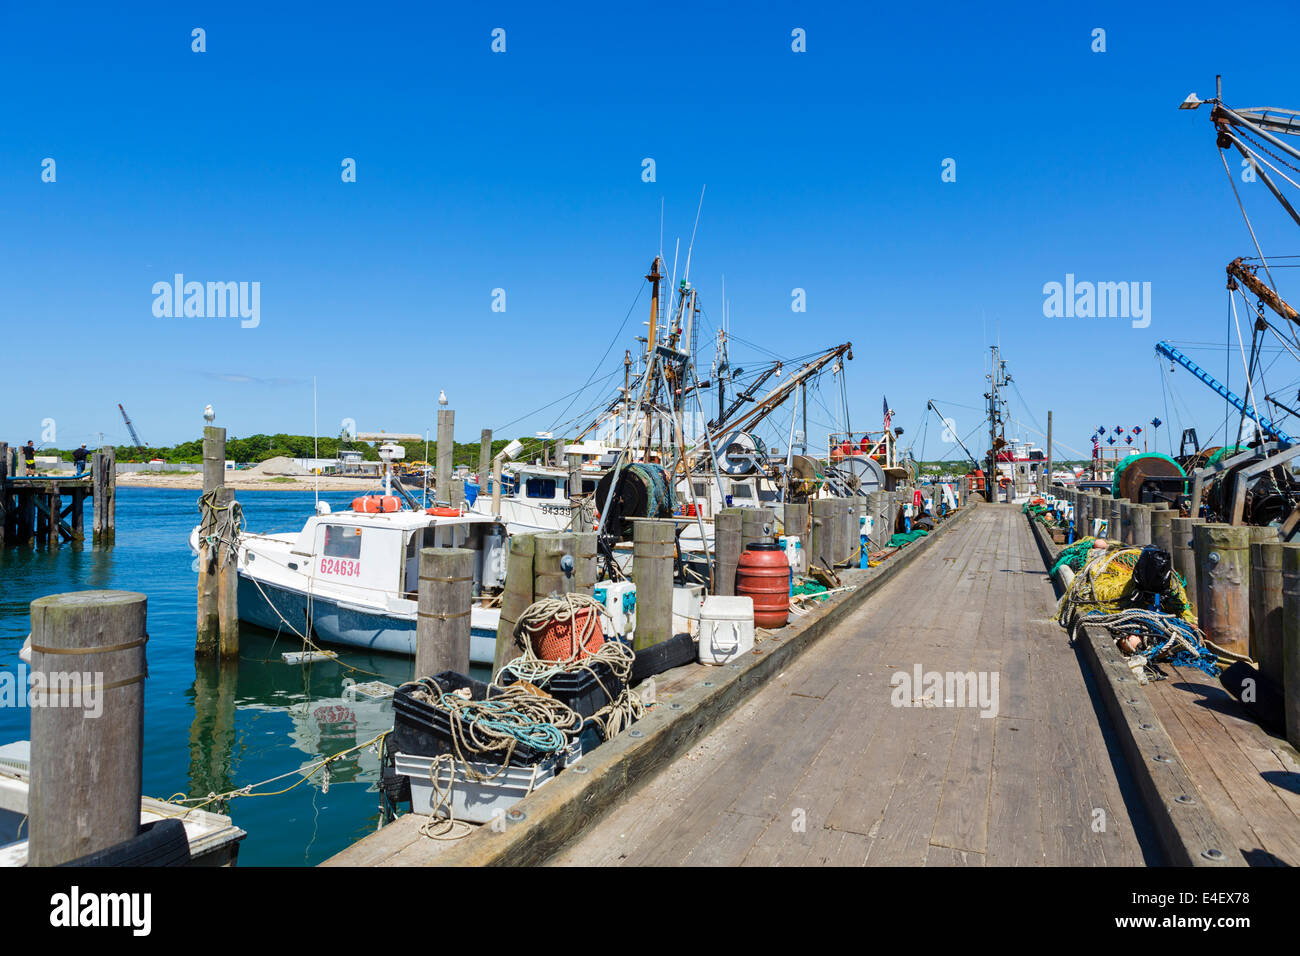 El puerto pesquero de trabajo en Montauk, el condado de Suffolk, en Long Island, NY, EE.UU. Foto de stock